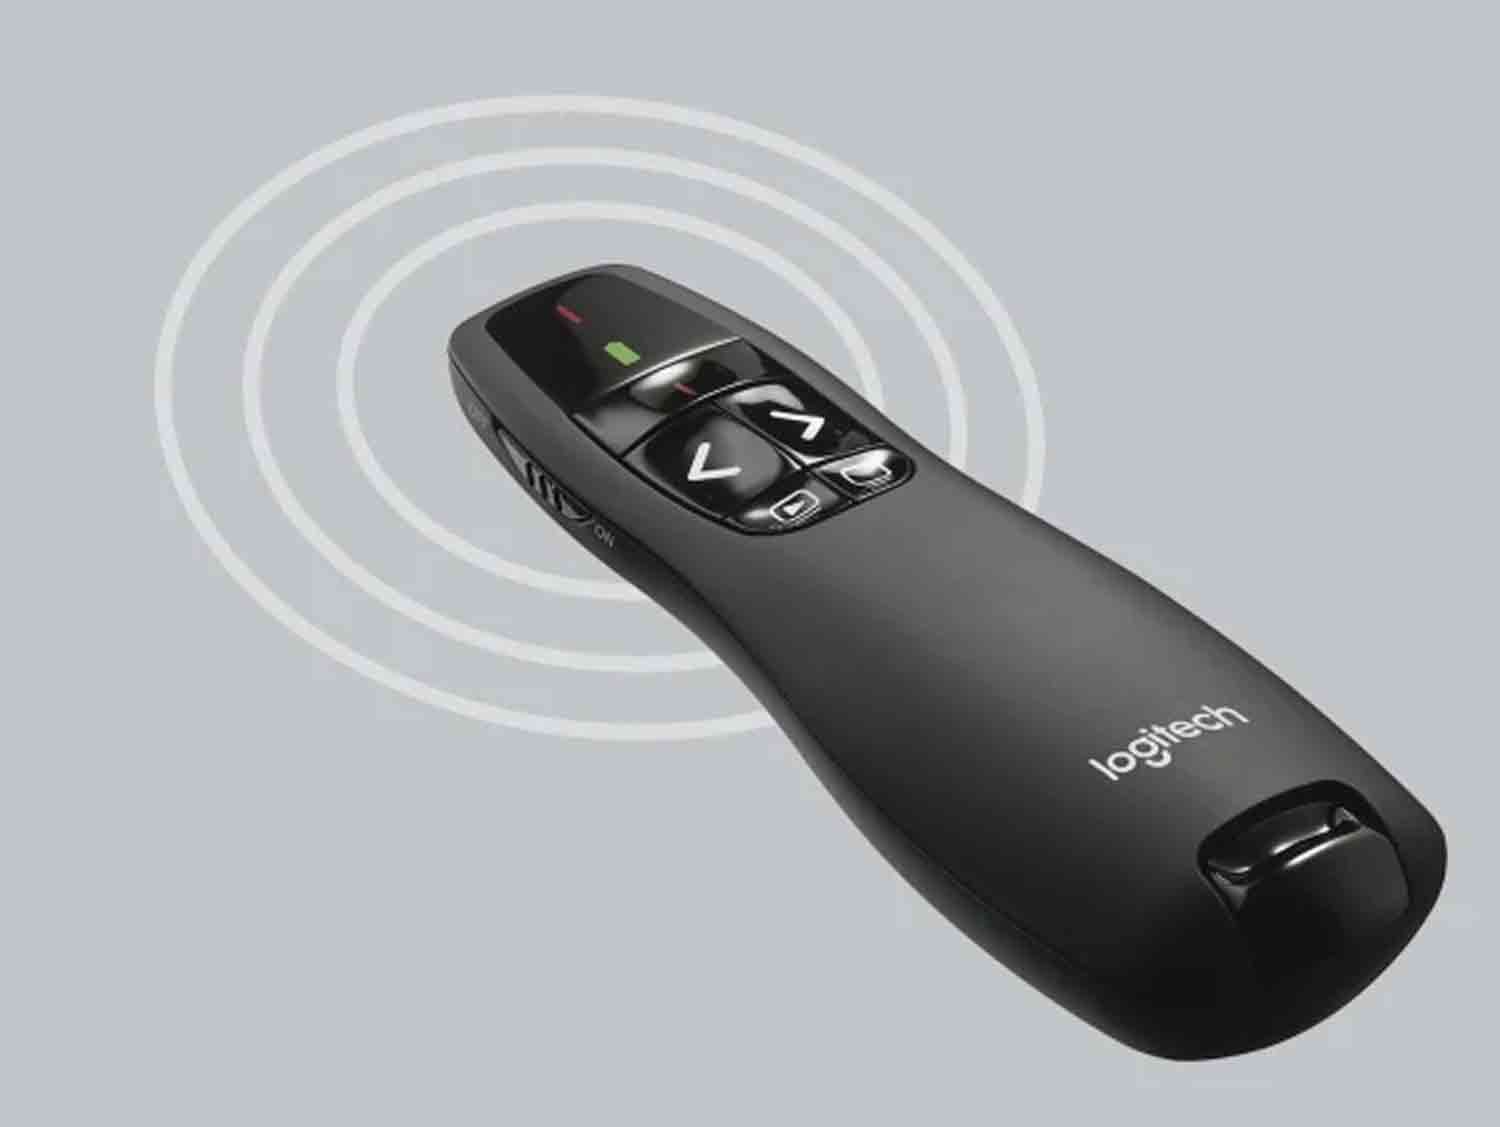 Logitech R400 Wireless Presentation Remote with Laser Pointer